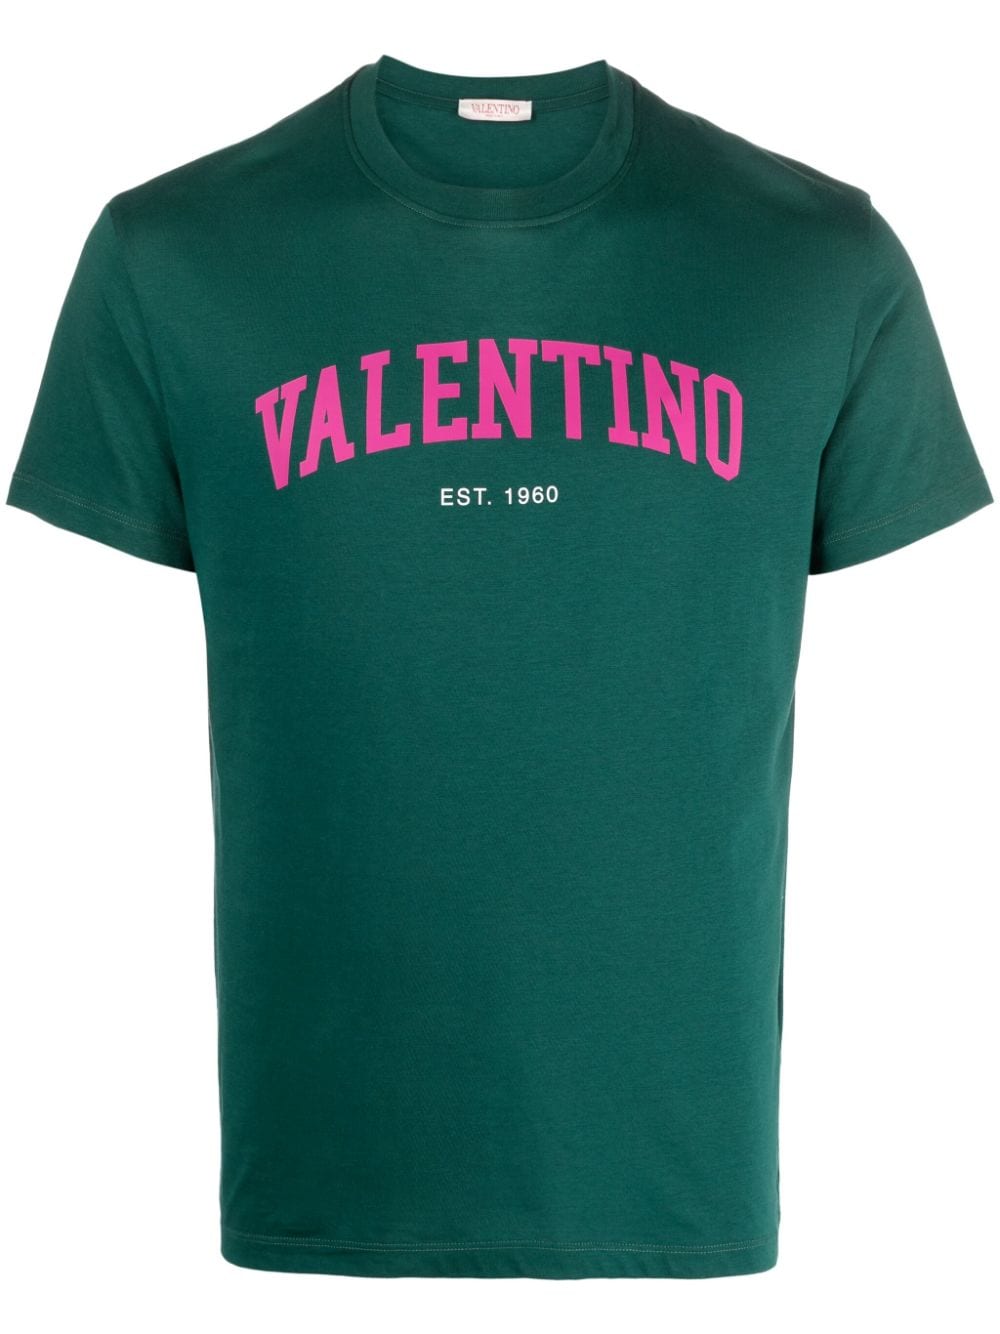 半袖TシャツカットソーVALENTINO バレンティノ Tシャツ Lサイズ 新品未使用